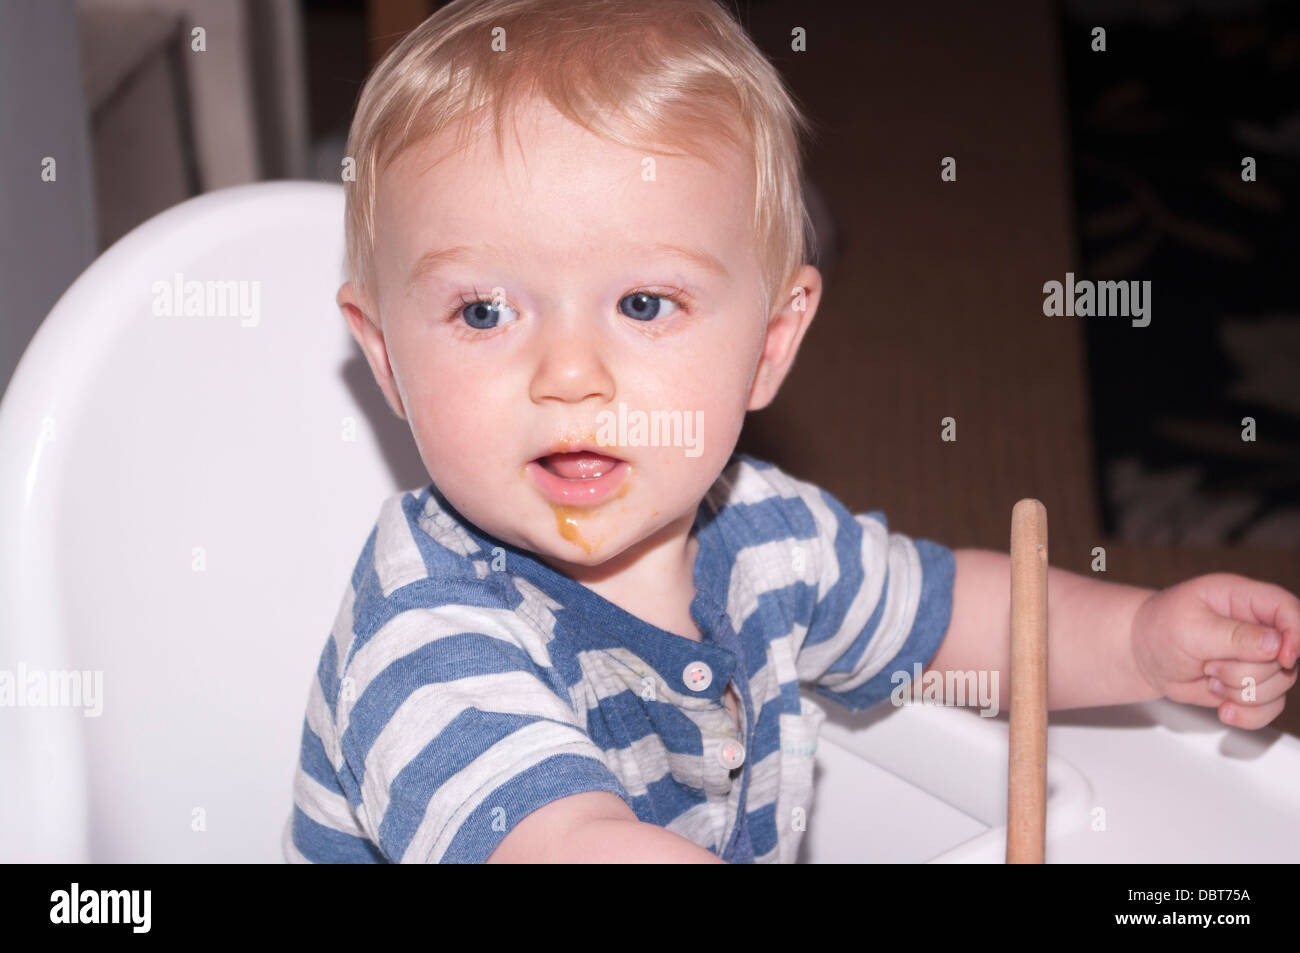 6 mois du garçon avec sa bouche ronde alimentaire Banque D'Images